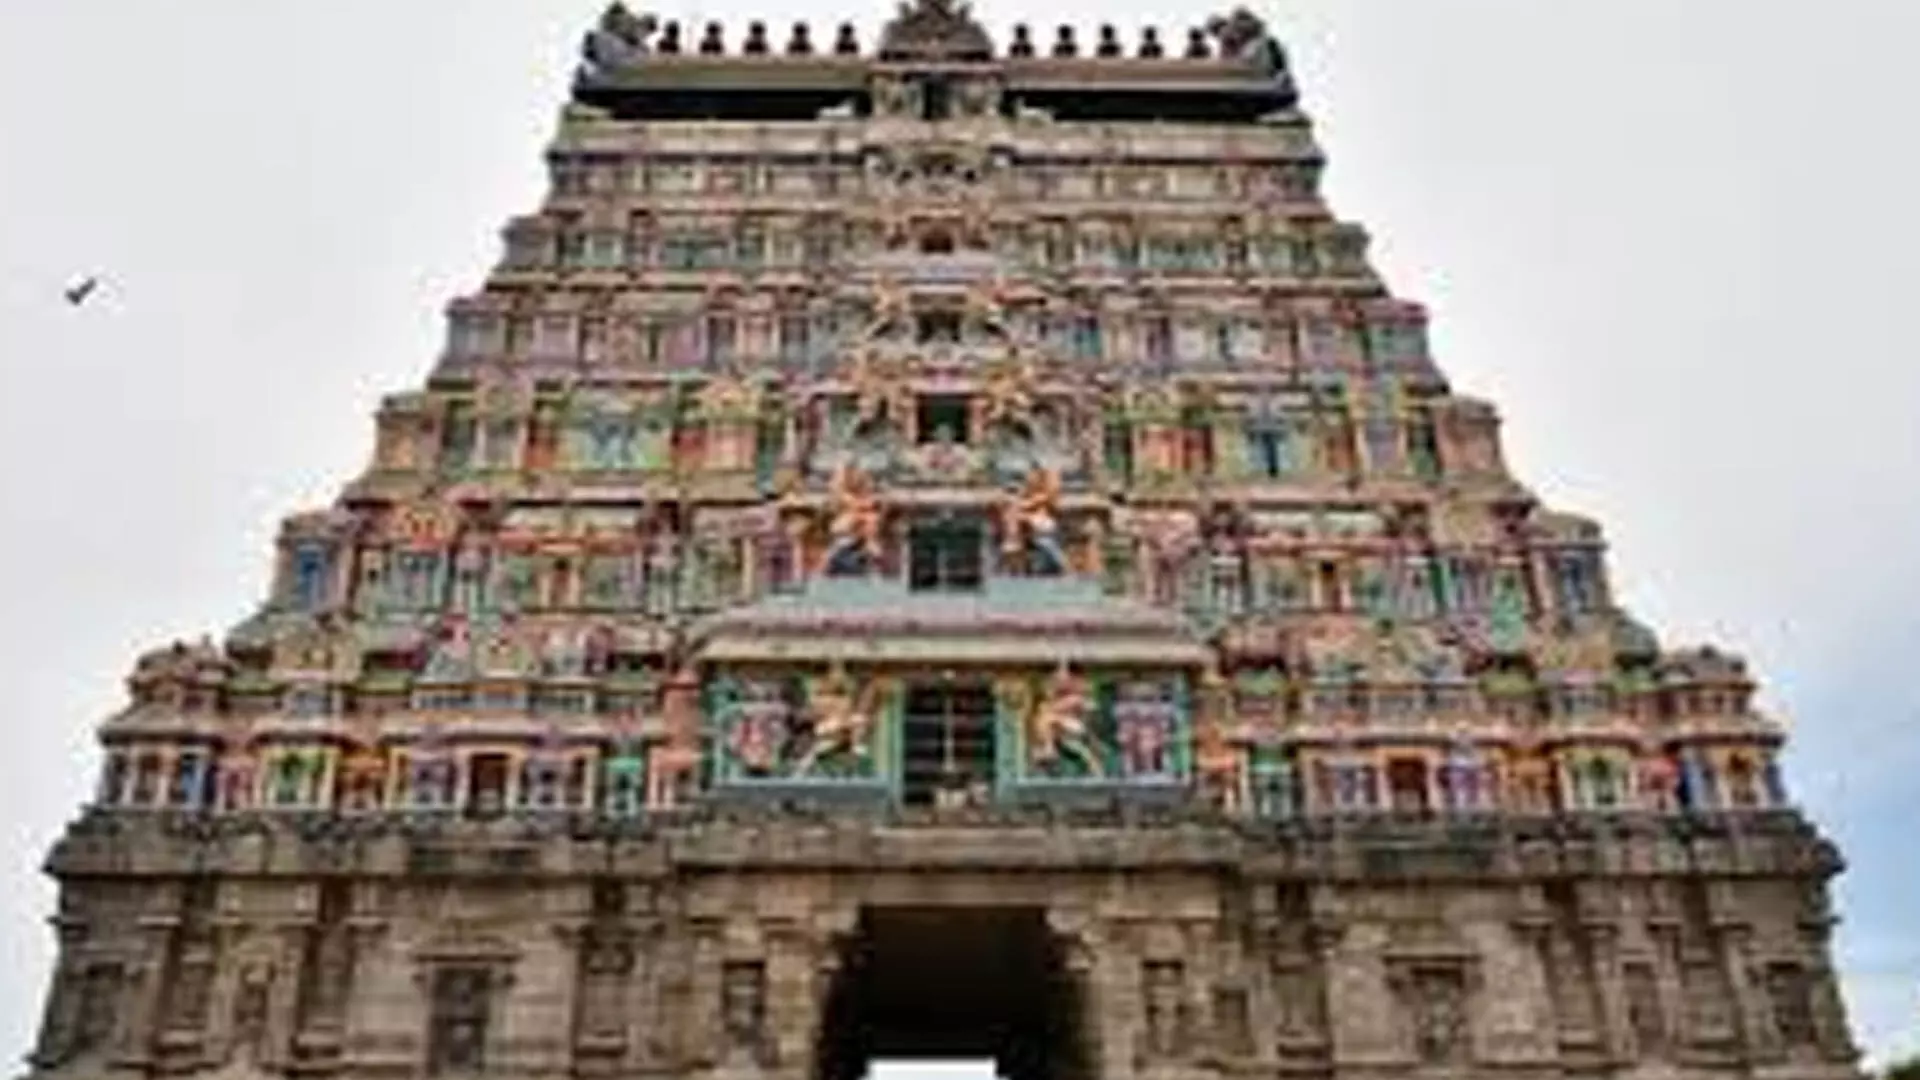 Tamil Nadu News: मानव संसाधन एवं संवर्द्धन विभाग का लक्ष्य वर्ष के अंत तक 2,000 मंदिरों का प्राण-प्रतिष्ठा कार्य पूरा किया